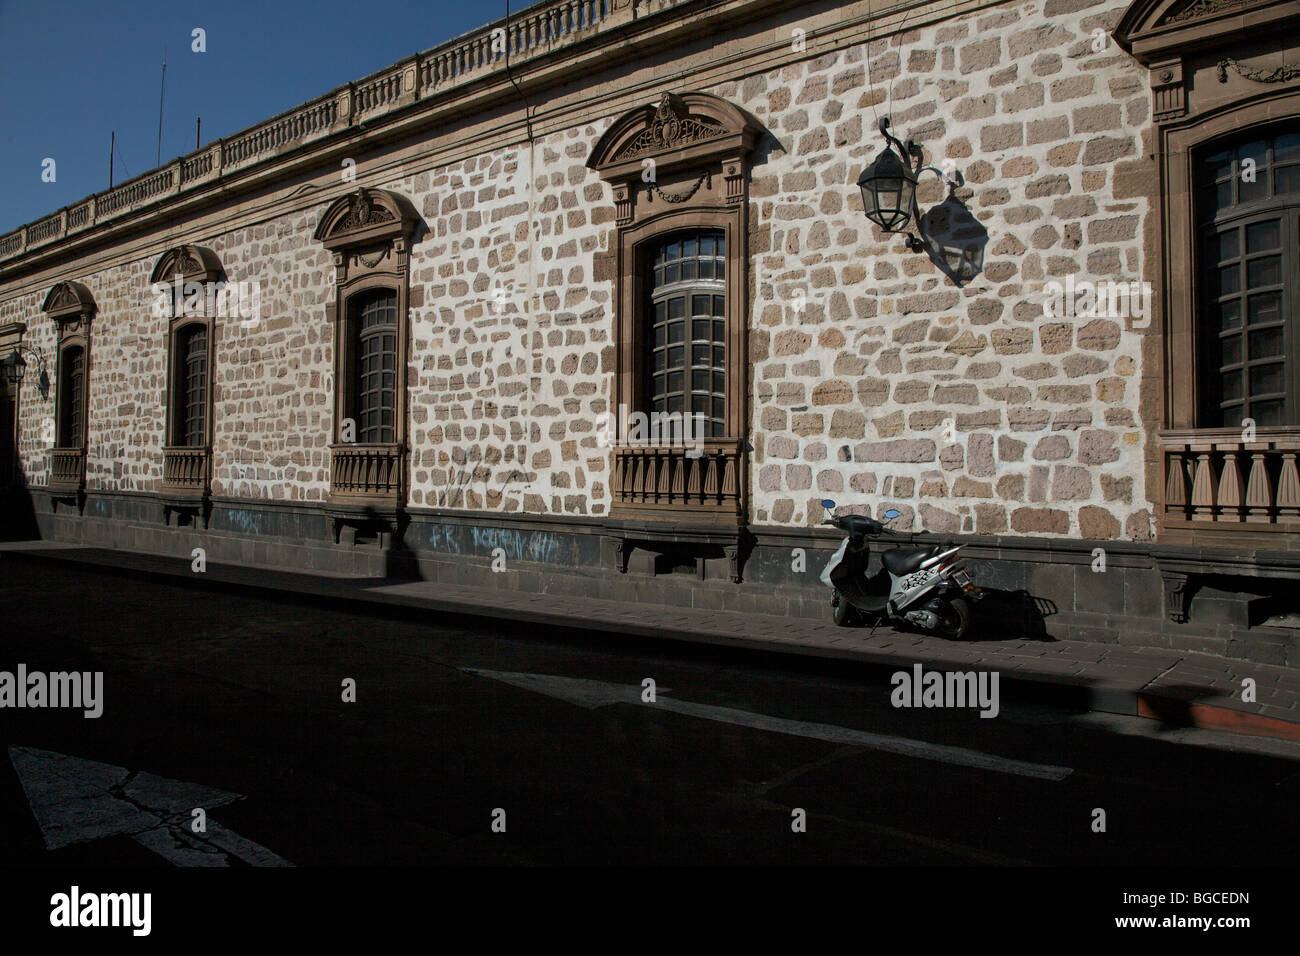 Mur sur un ancien bâtiment de style espagnol à Morelia, Michoacan Mexique de l'état. Banque D'Images